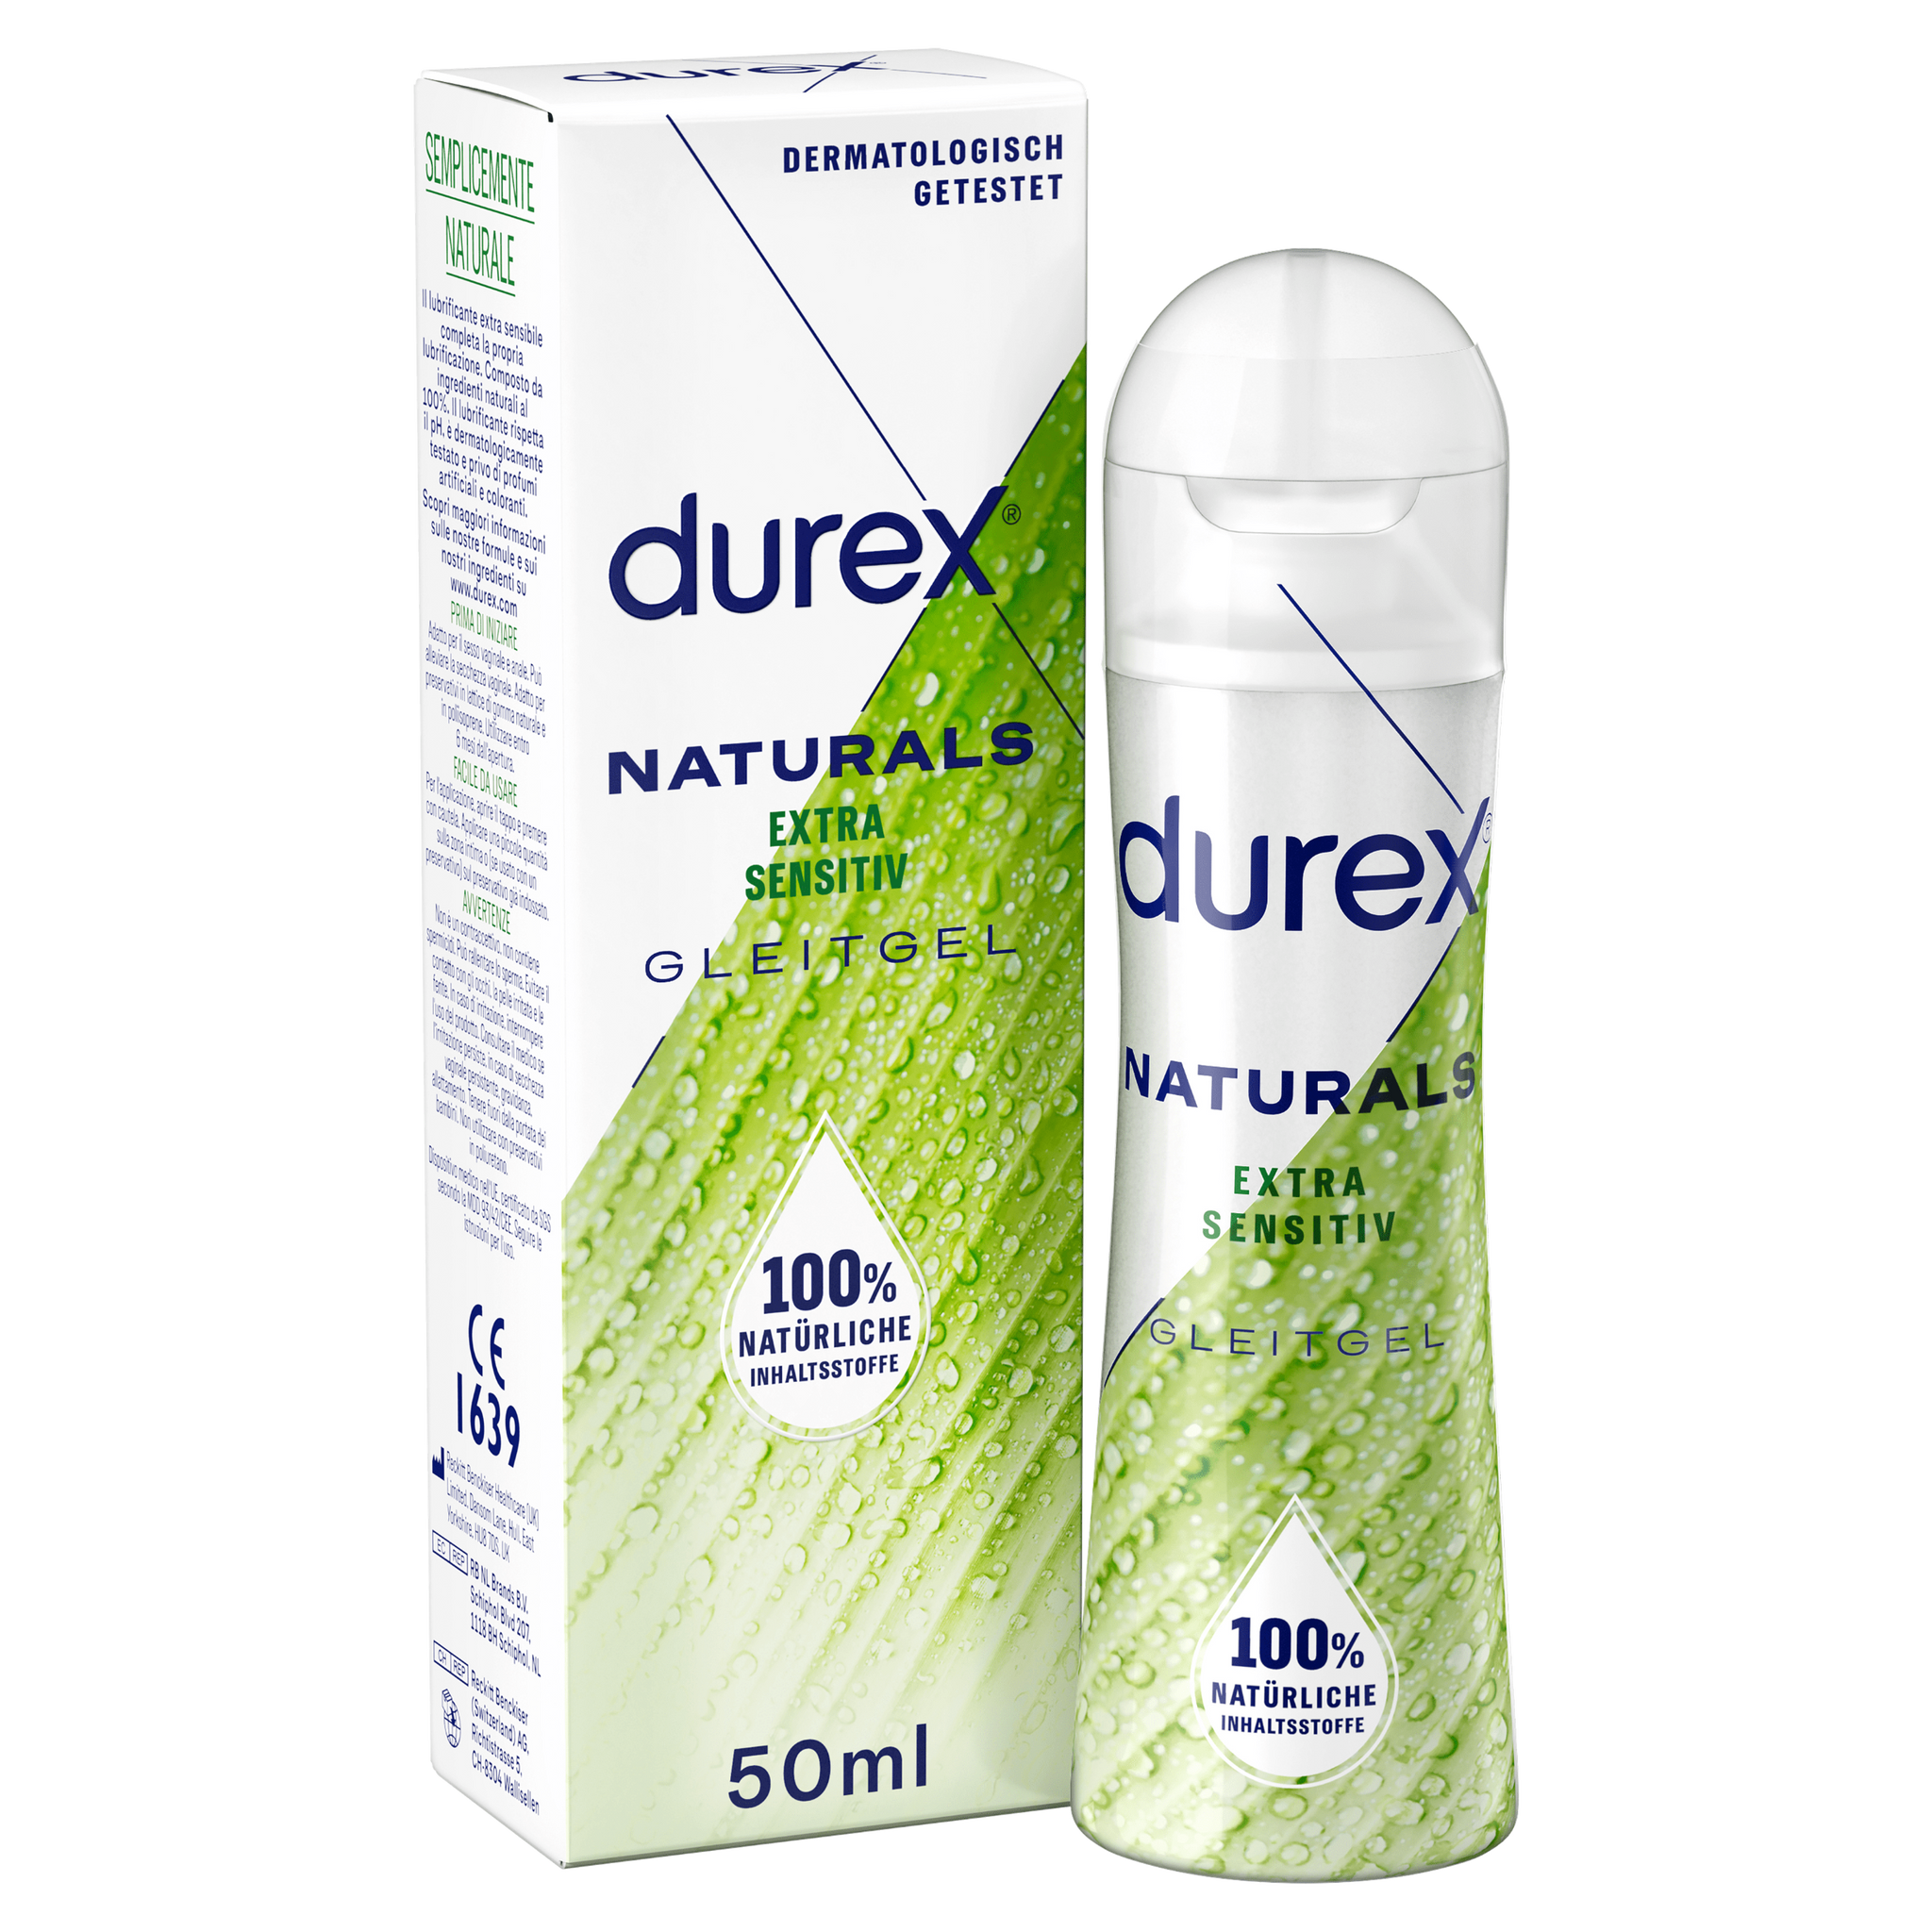 Durex DE Naturals Gleitgel 50ml